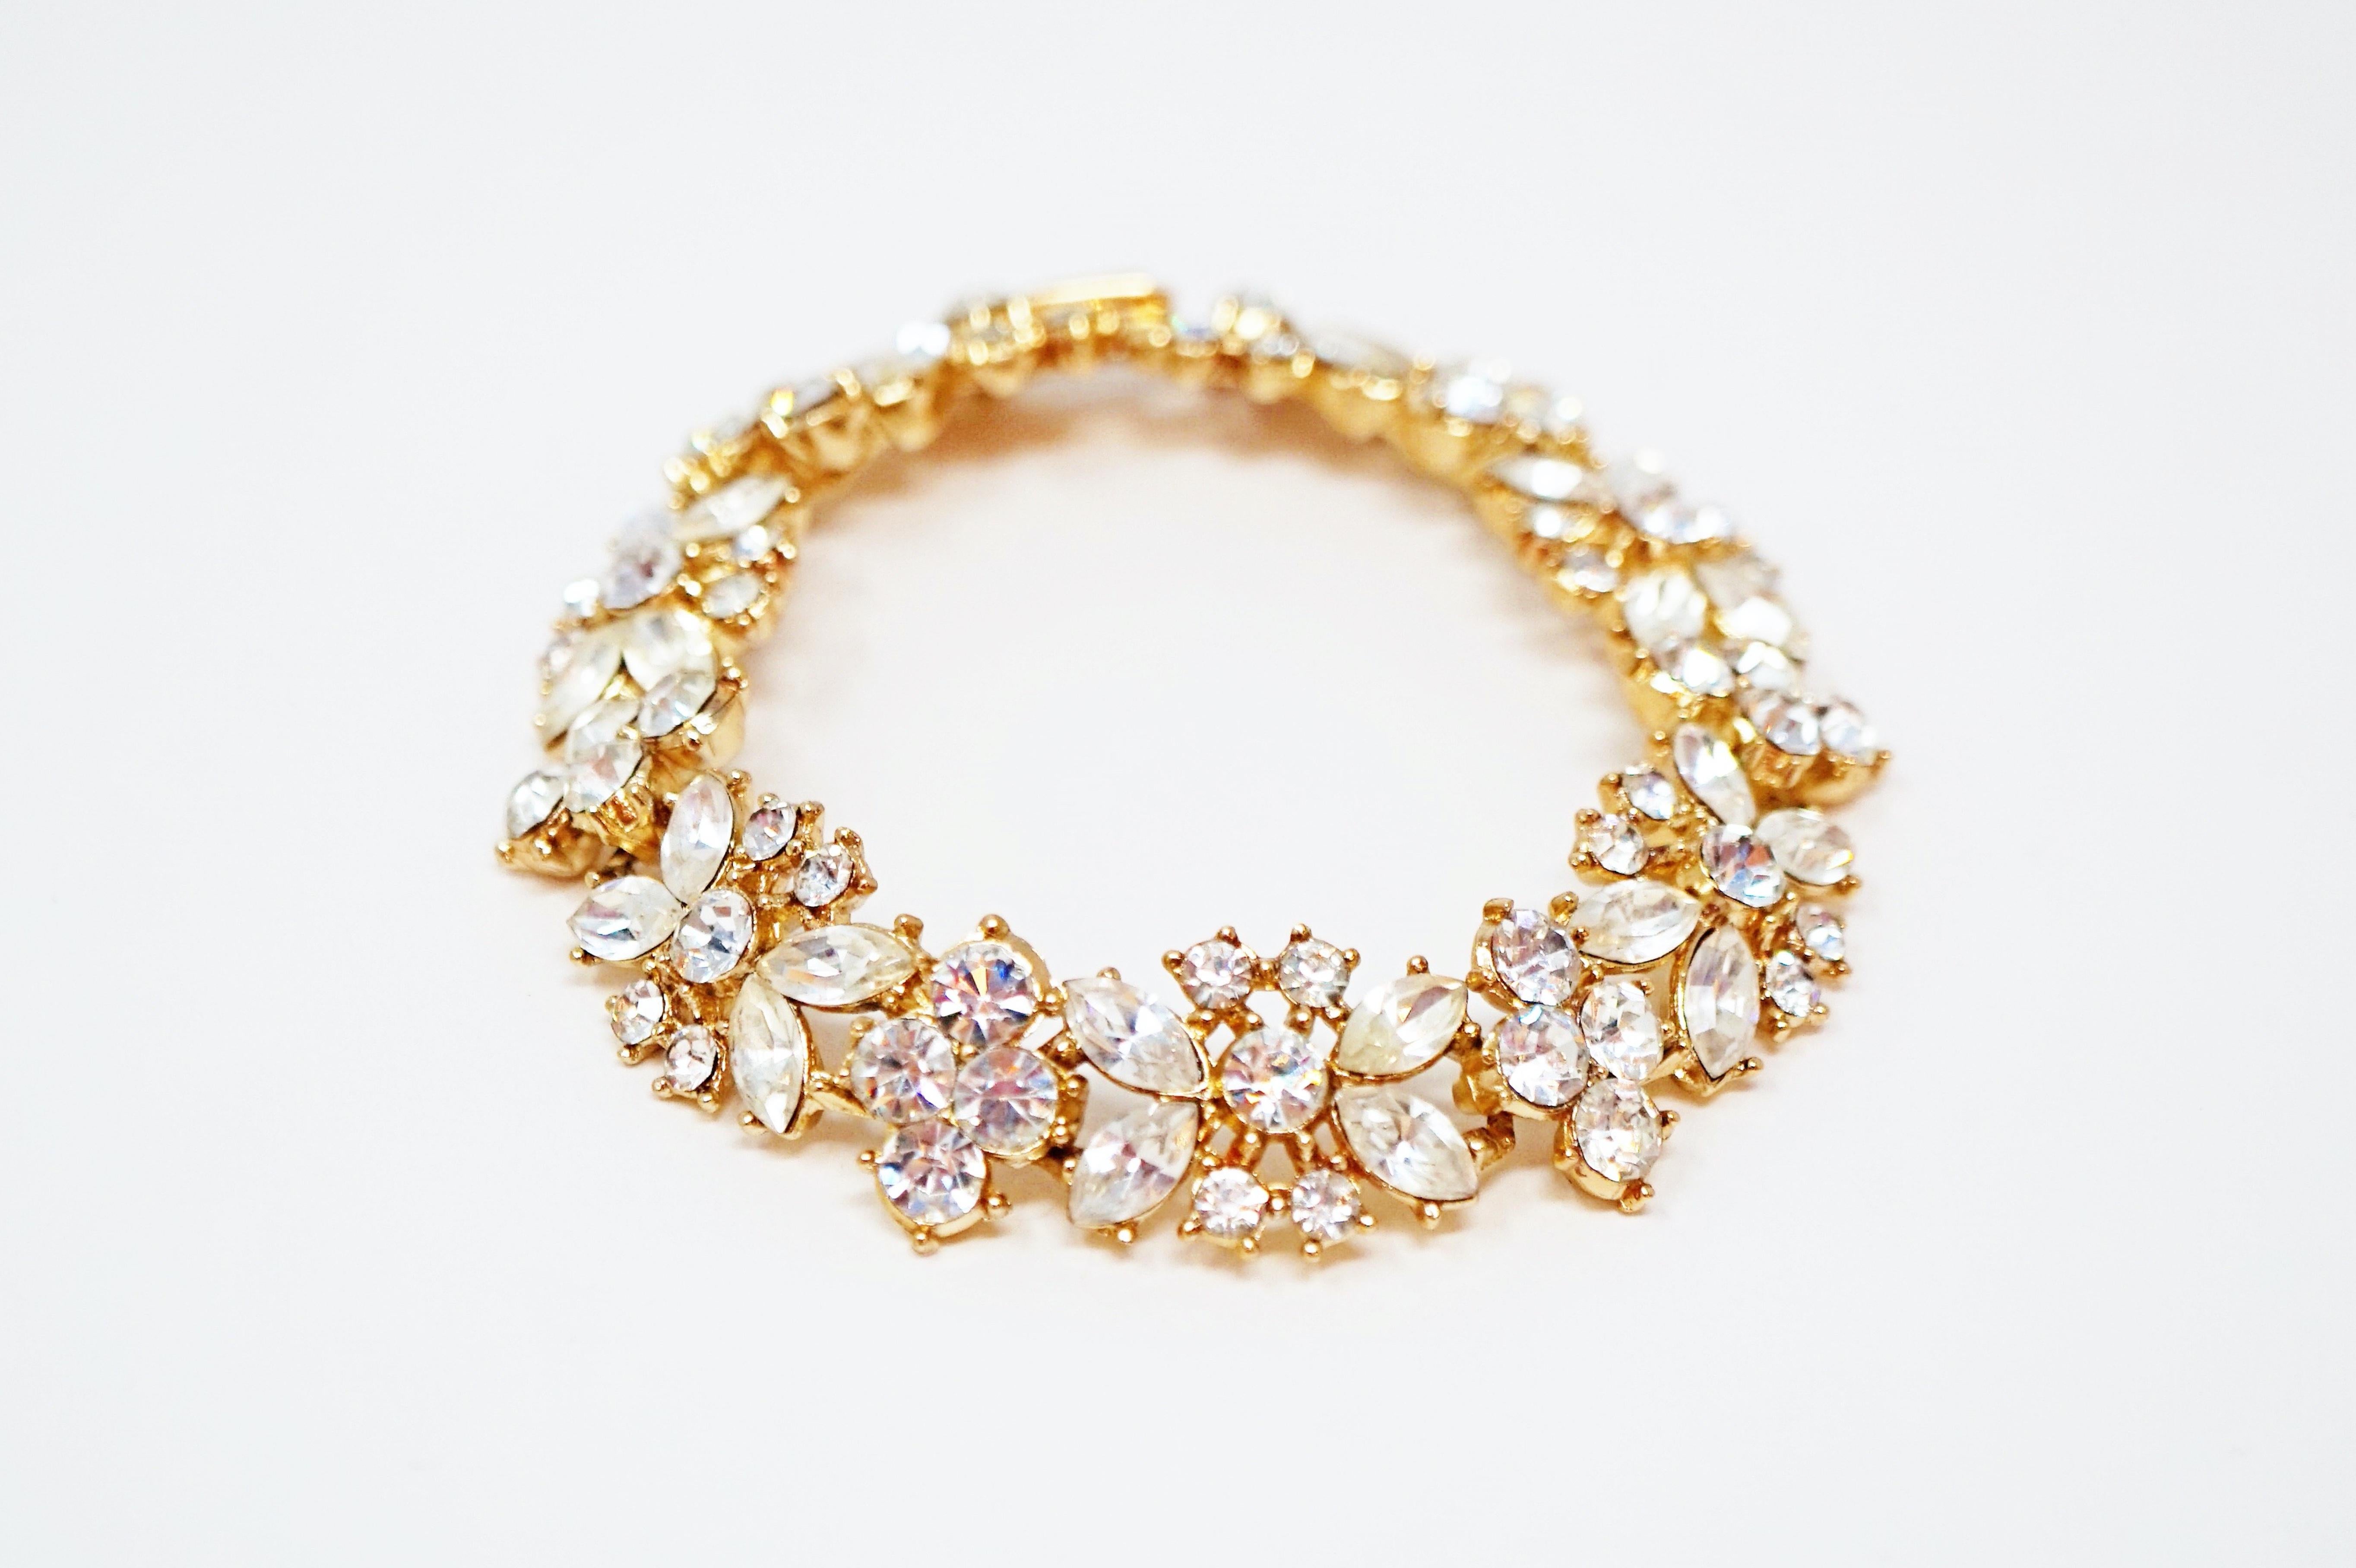 diamond bracelet and earring set